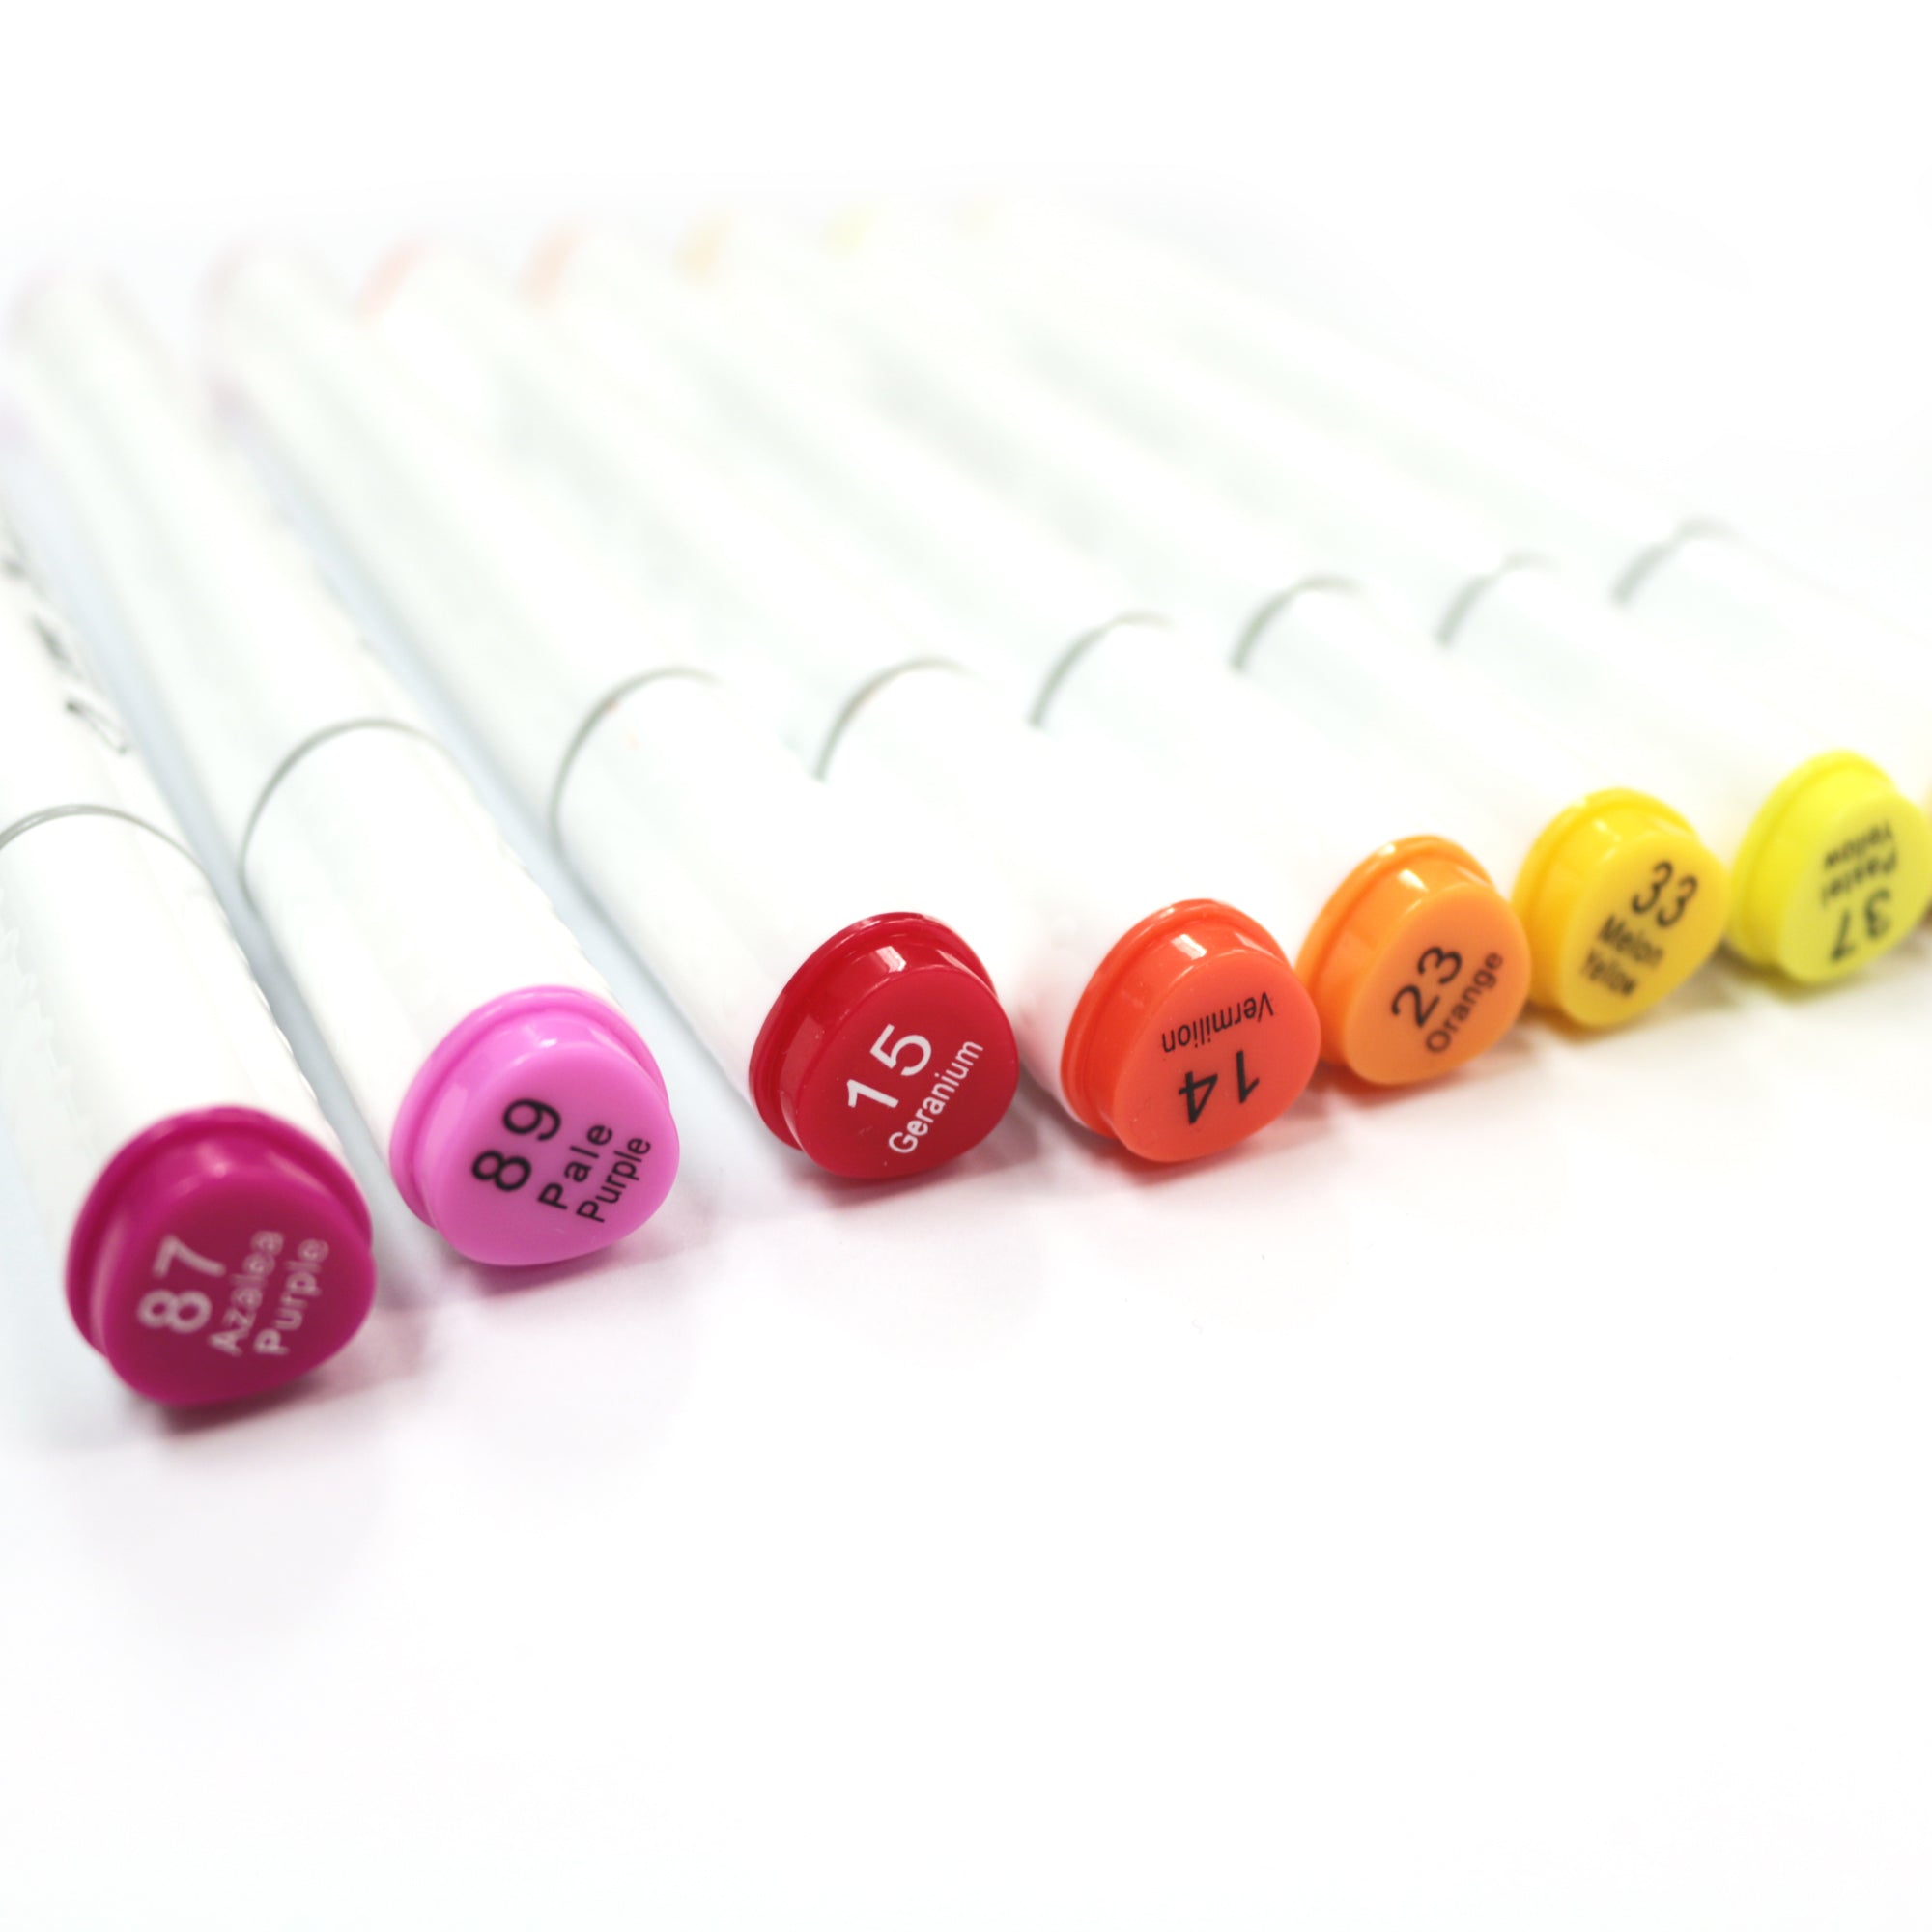 ANYINNO 36 Colors Dual Tip Brush Pens, Watercolor Marker